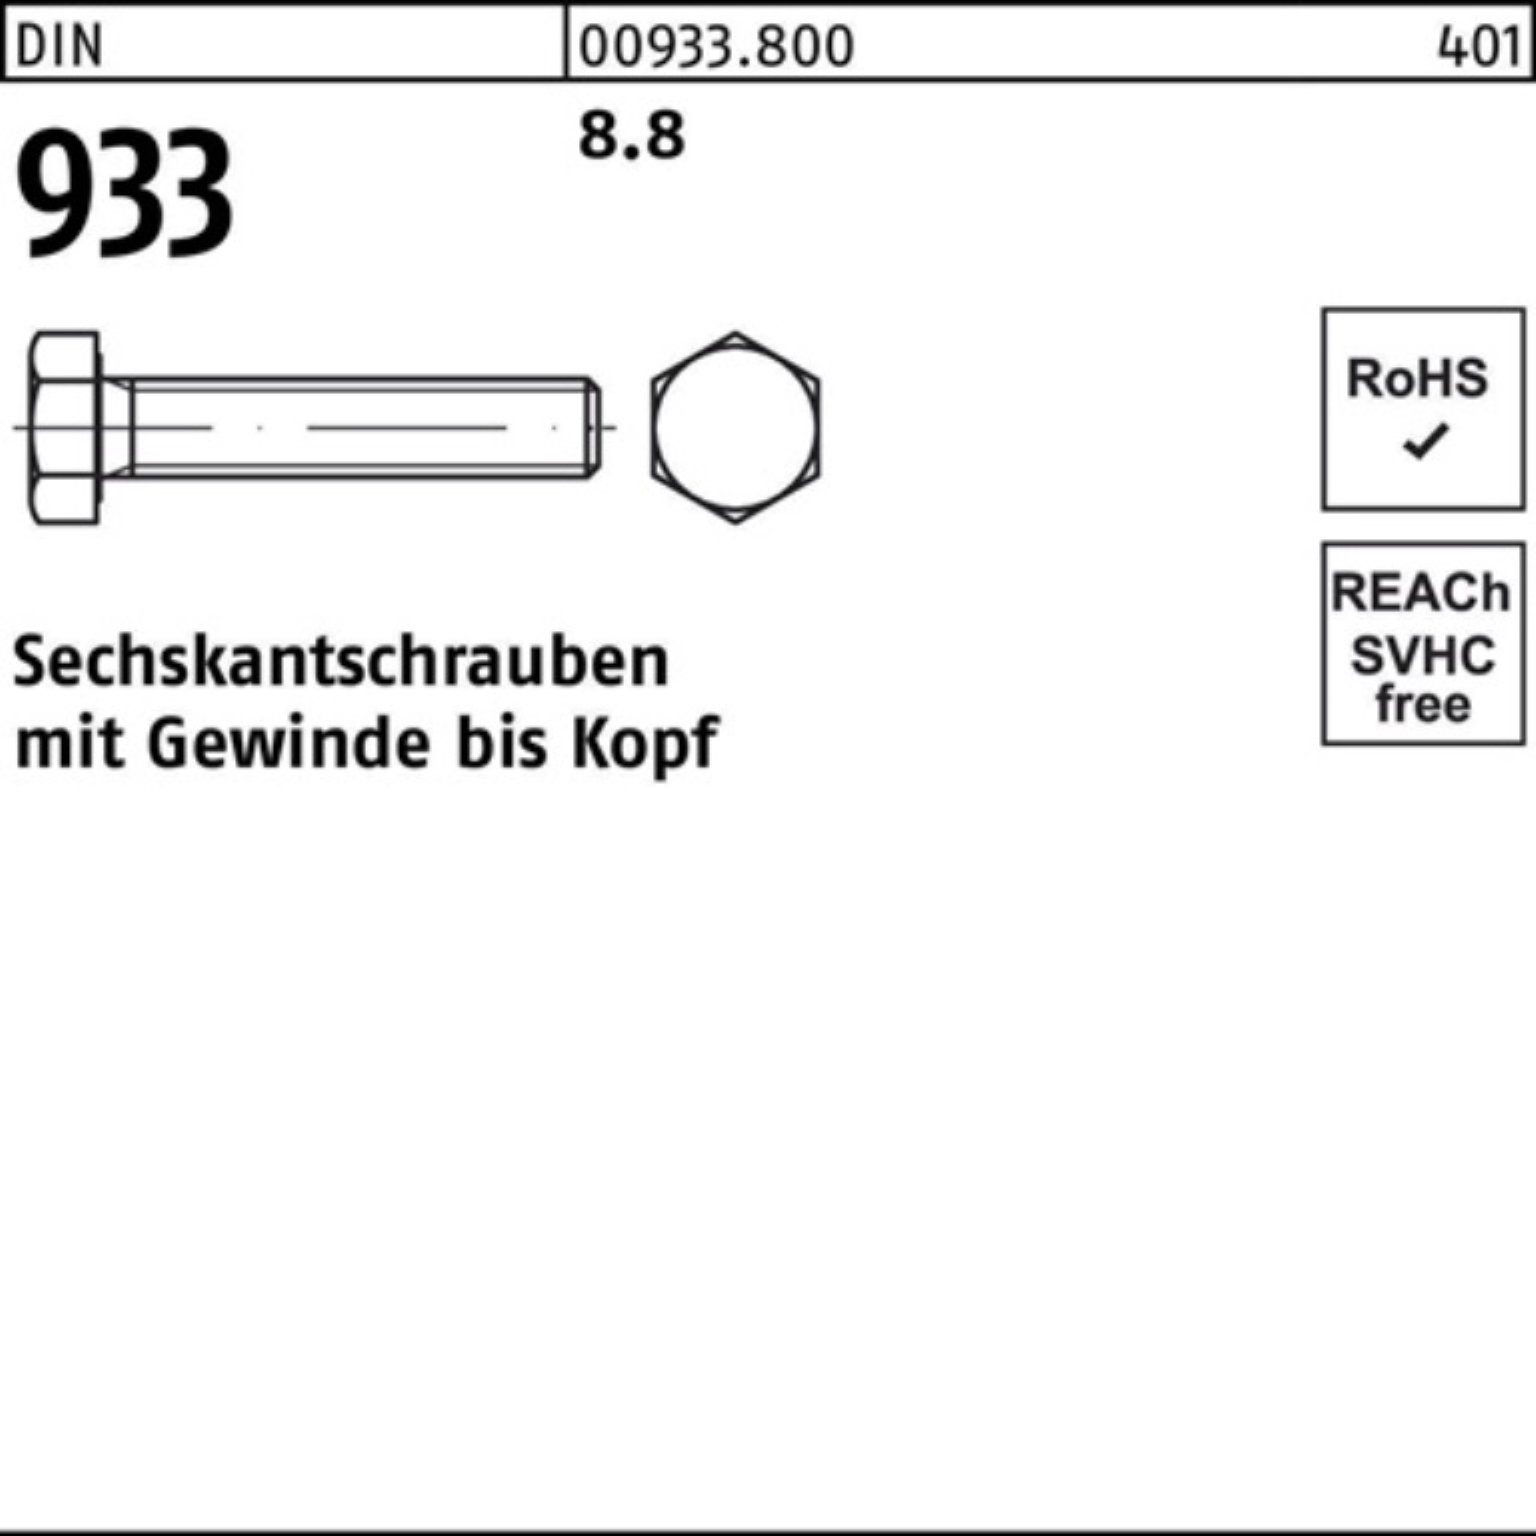 M48x Stück 180 DIN Sechskantschraube 1 8.8 Sechskantschraube 933 Reyher Pack DIN VG 933 100er